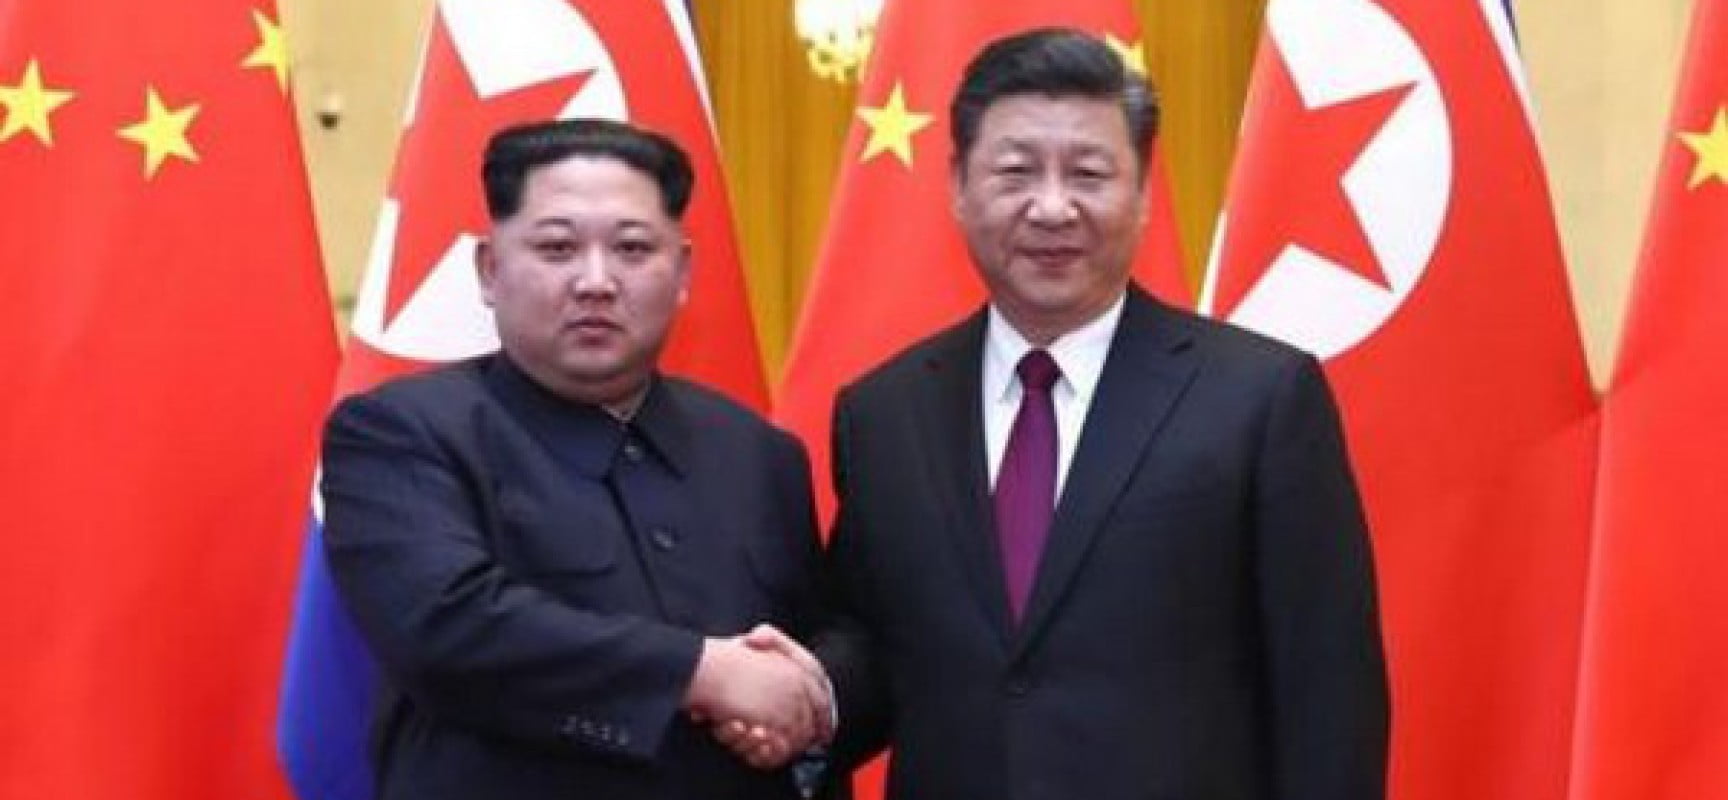 Η Κίνα επιβεβαιώνει ότι οι Xi Jinping και Kim Jong πραγματοποίησαν συνομιλίες στο Πεκίνο